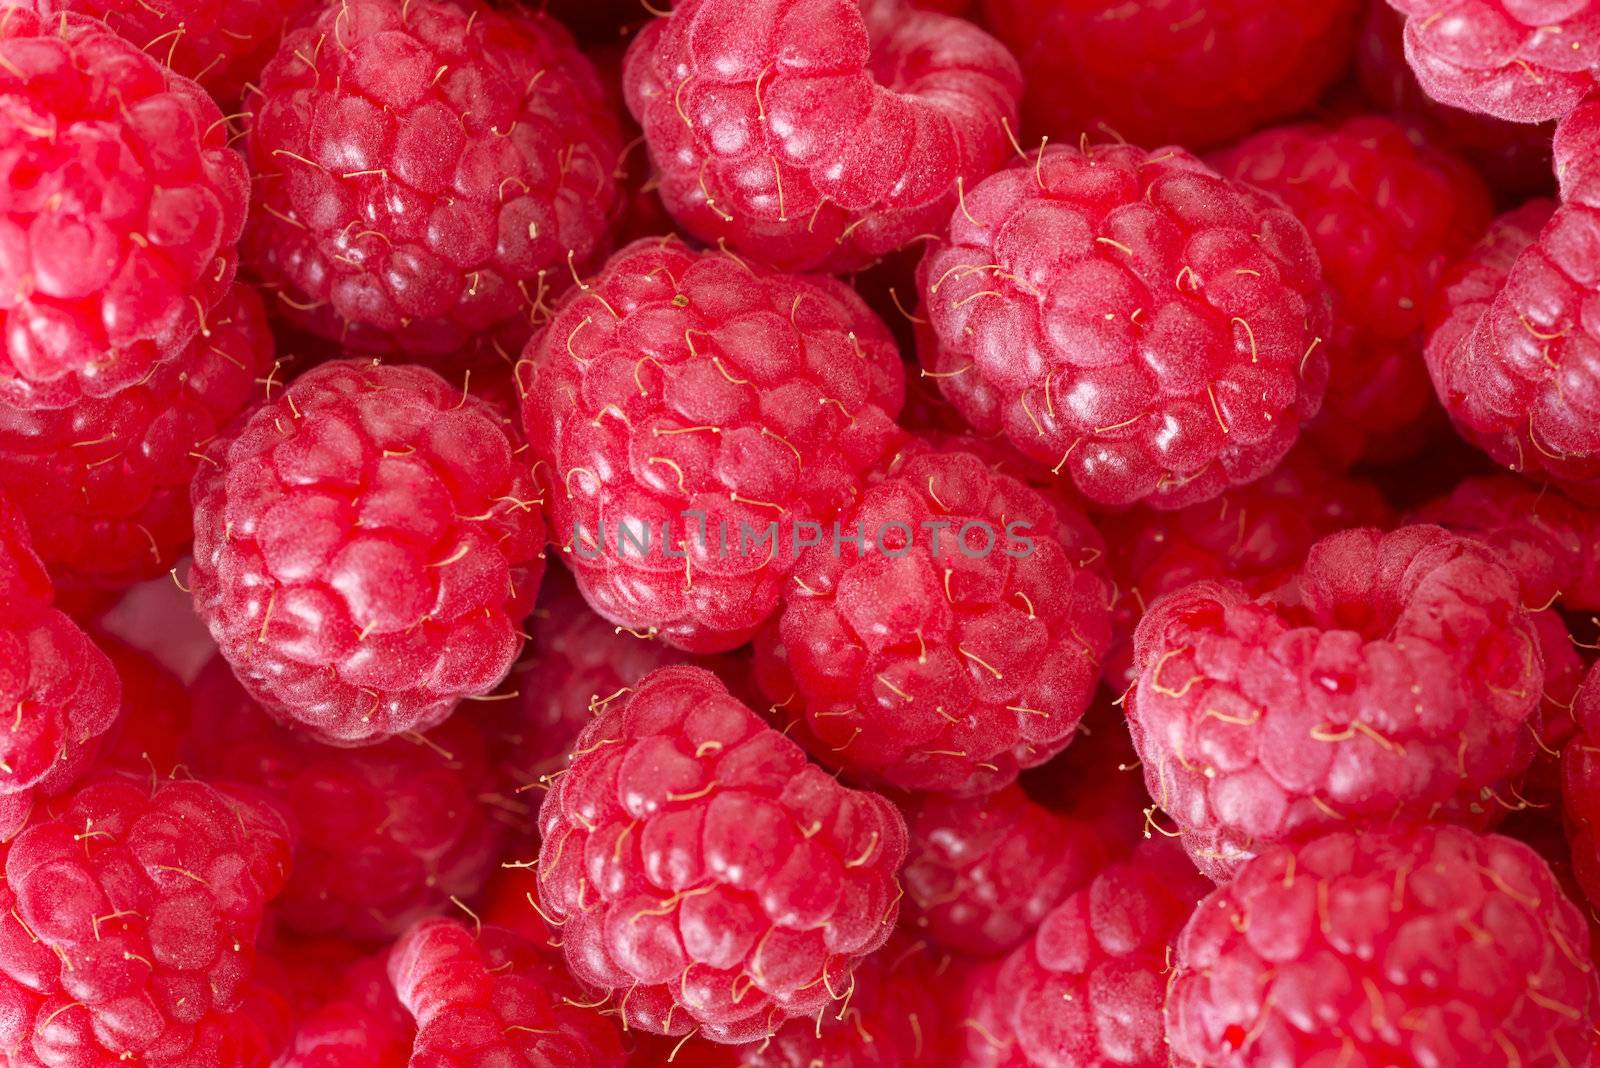 Raspberries by BDS